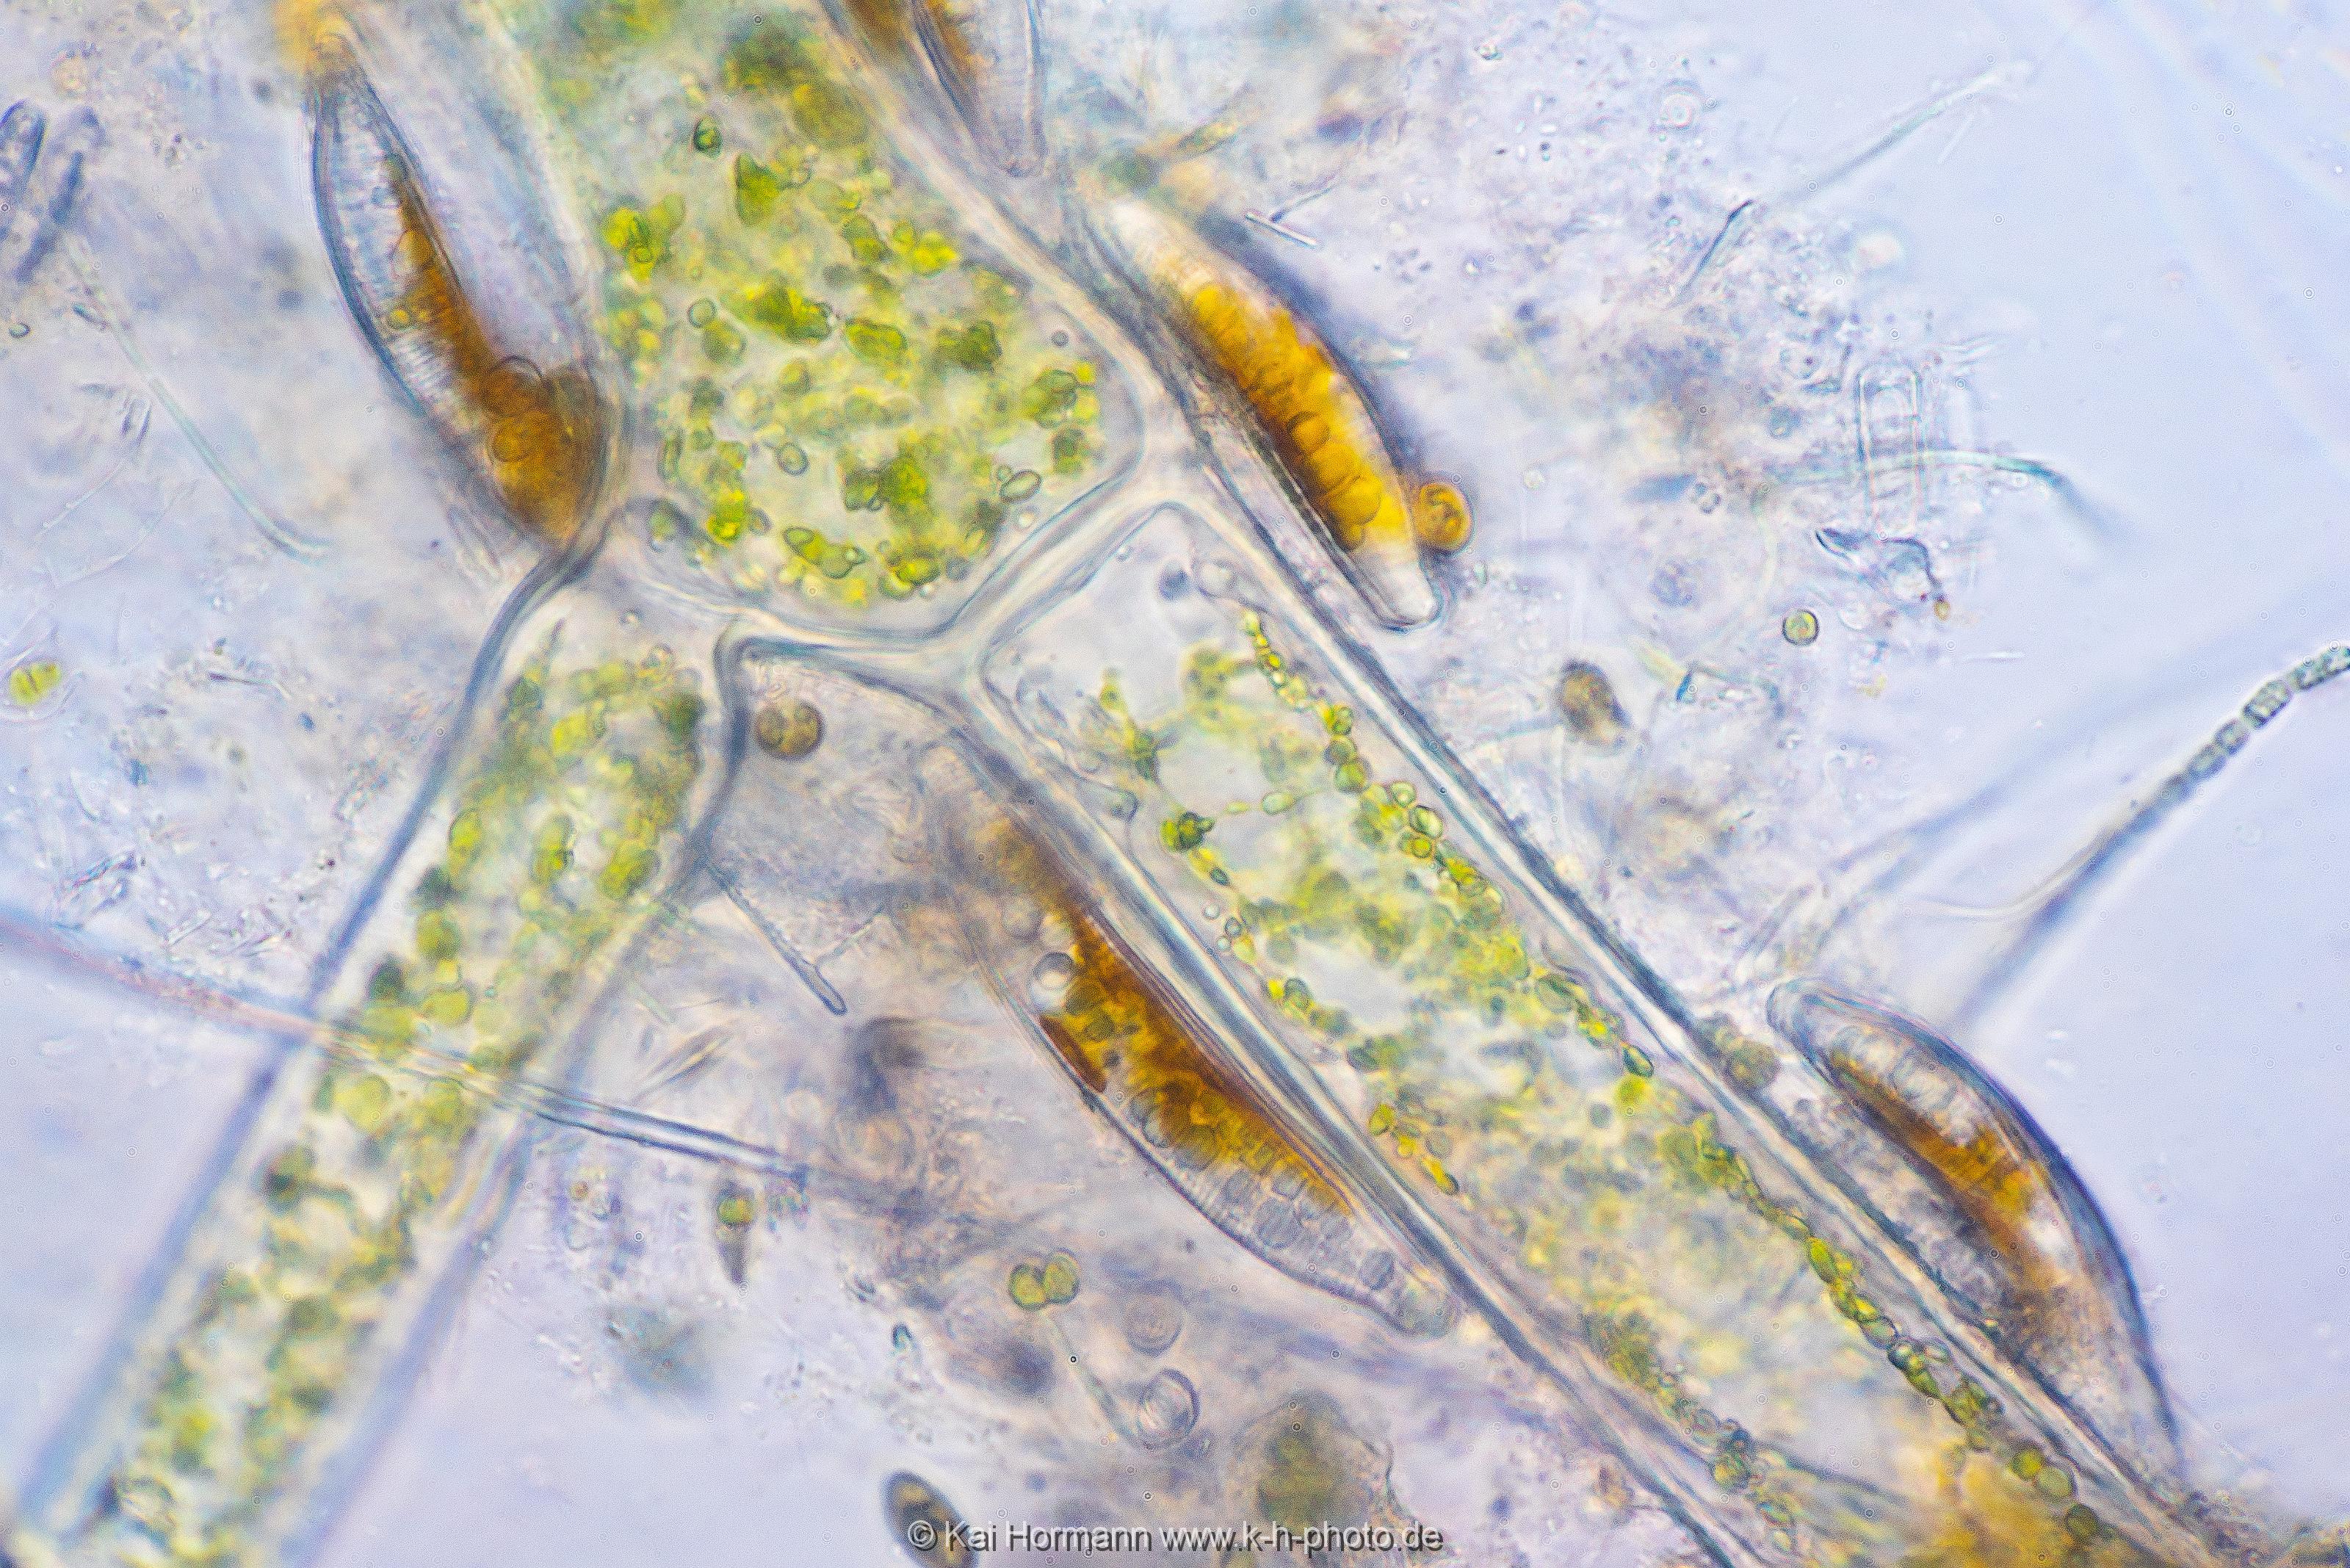 Kieselalgen auf Faden-Grünalge. Mikrofotografie: Mikroskopische Aufnahmen von Einzellern, Algen und Kleinstlebewesen.